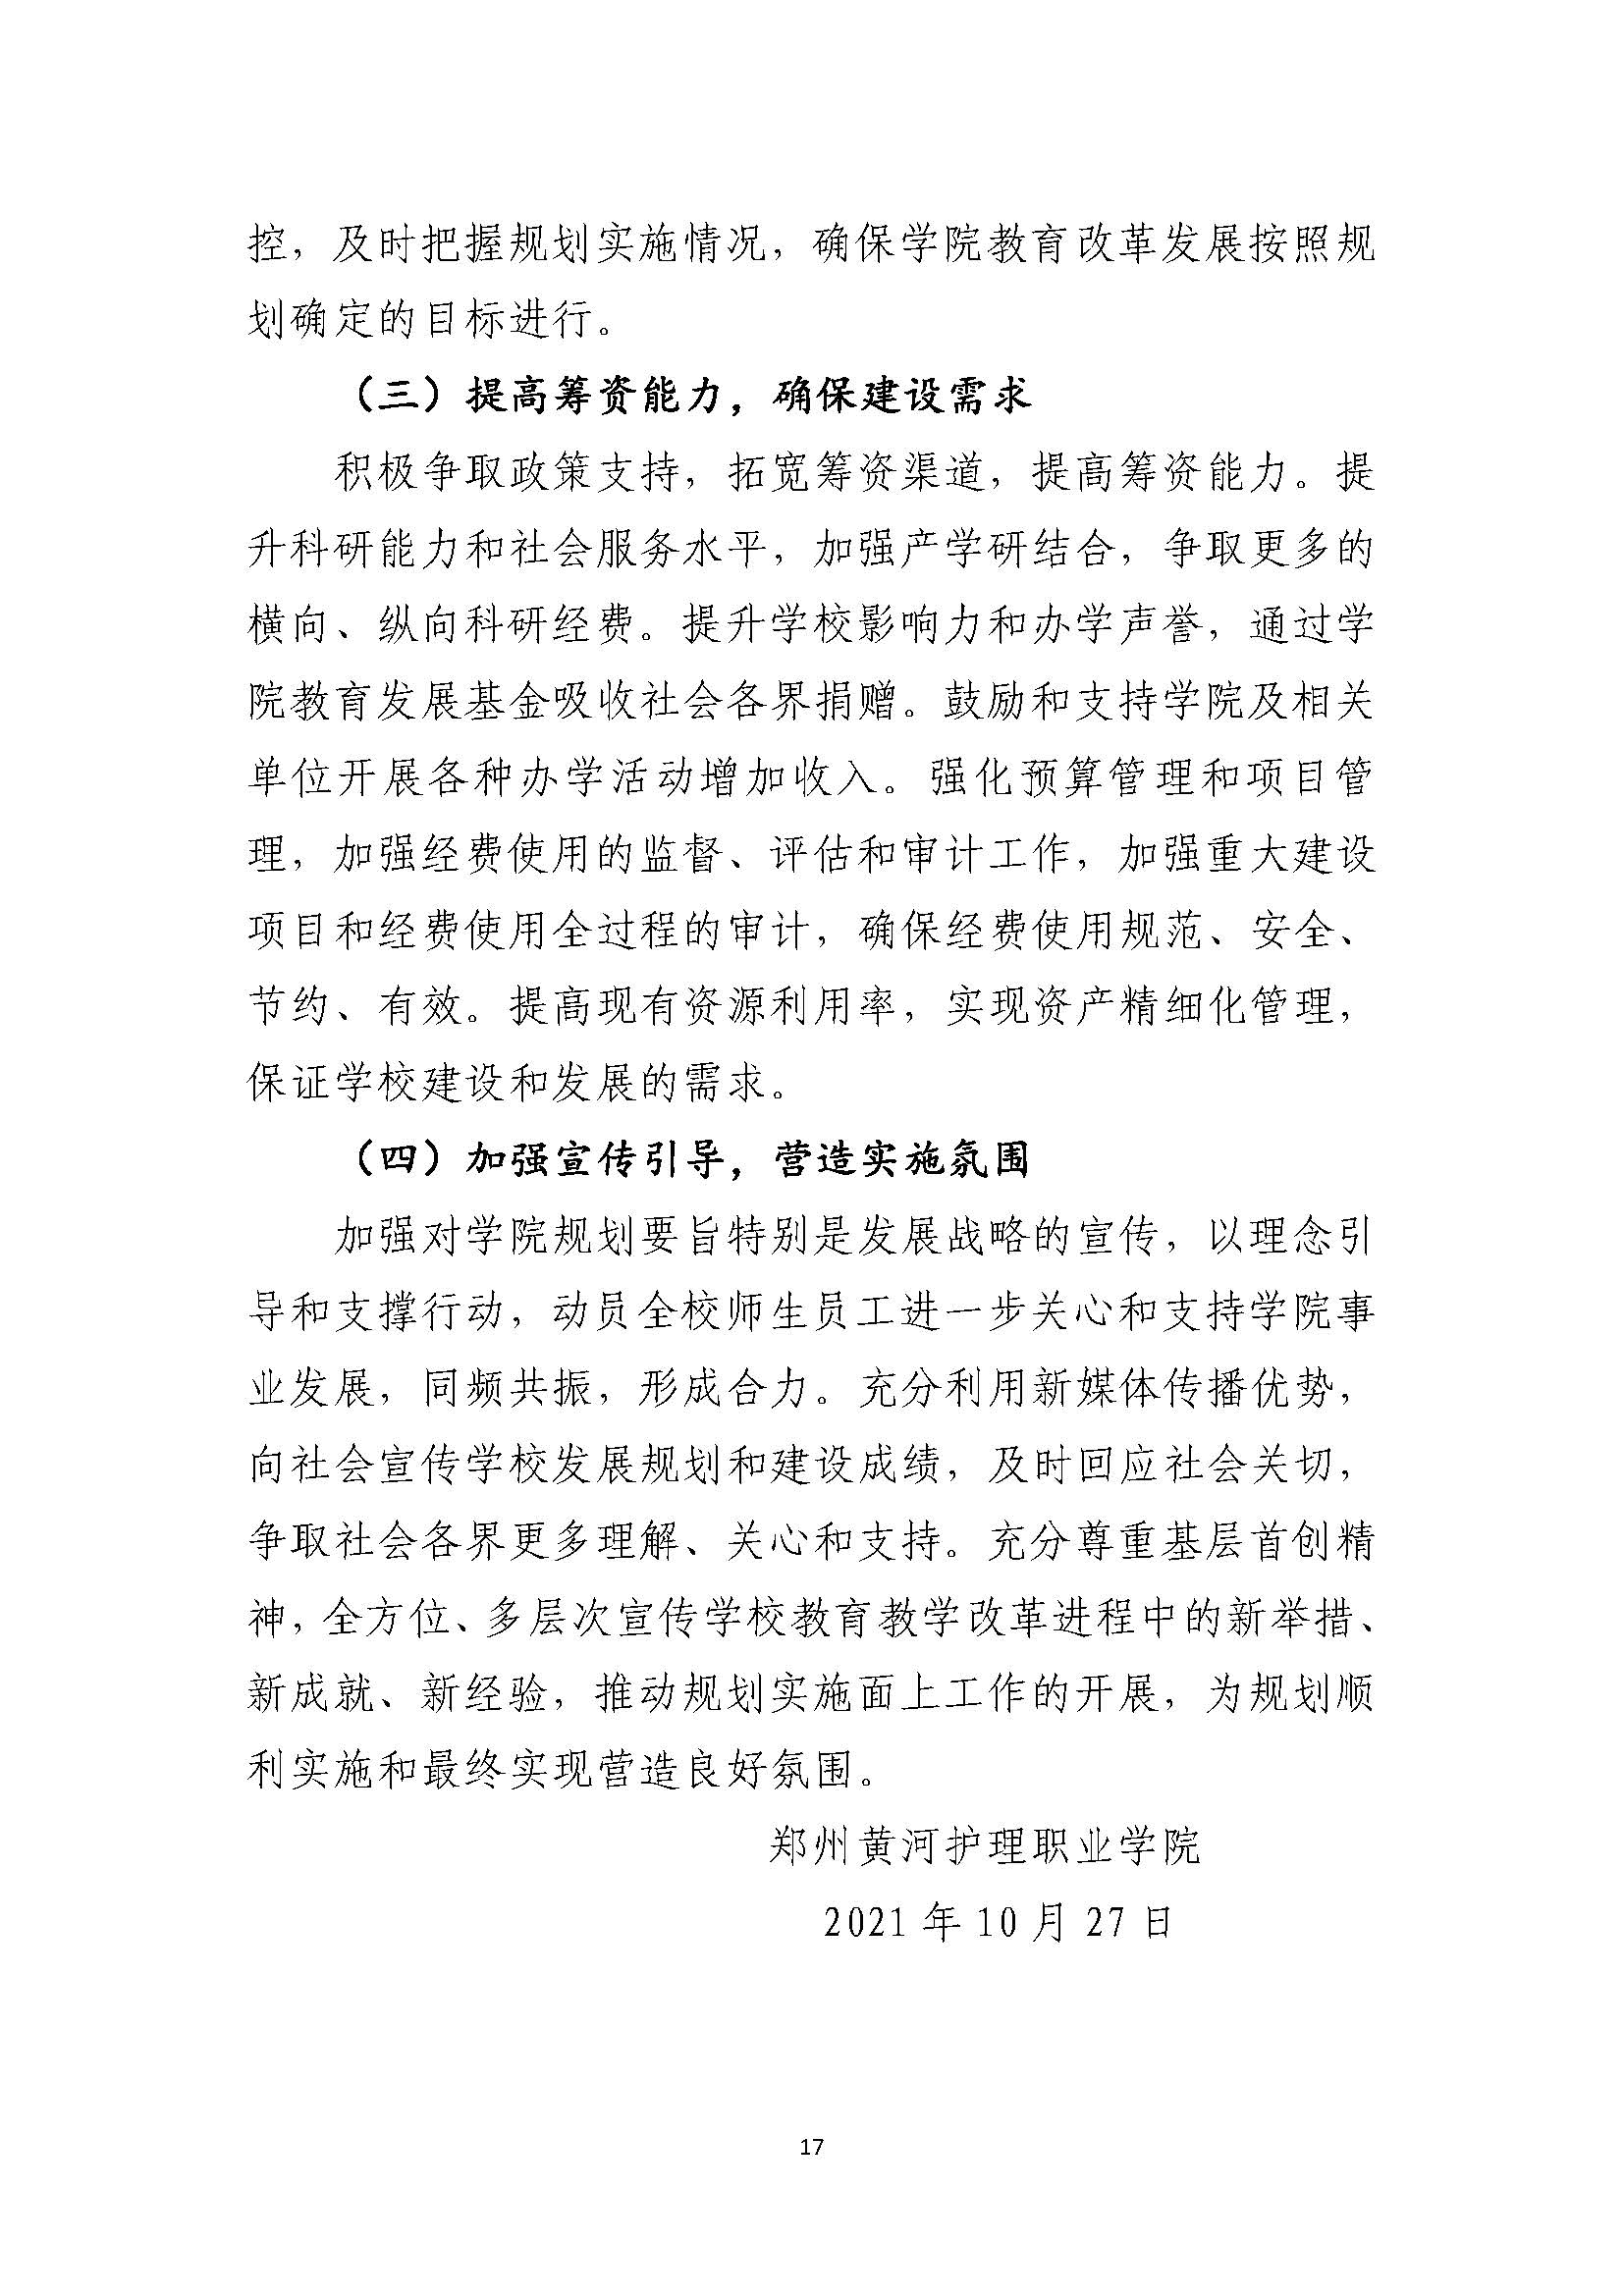 郑州黄河护理职业学院2021-2025年发展规划_页面_17.jpg